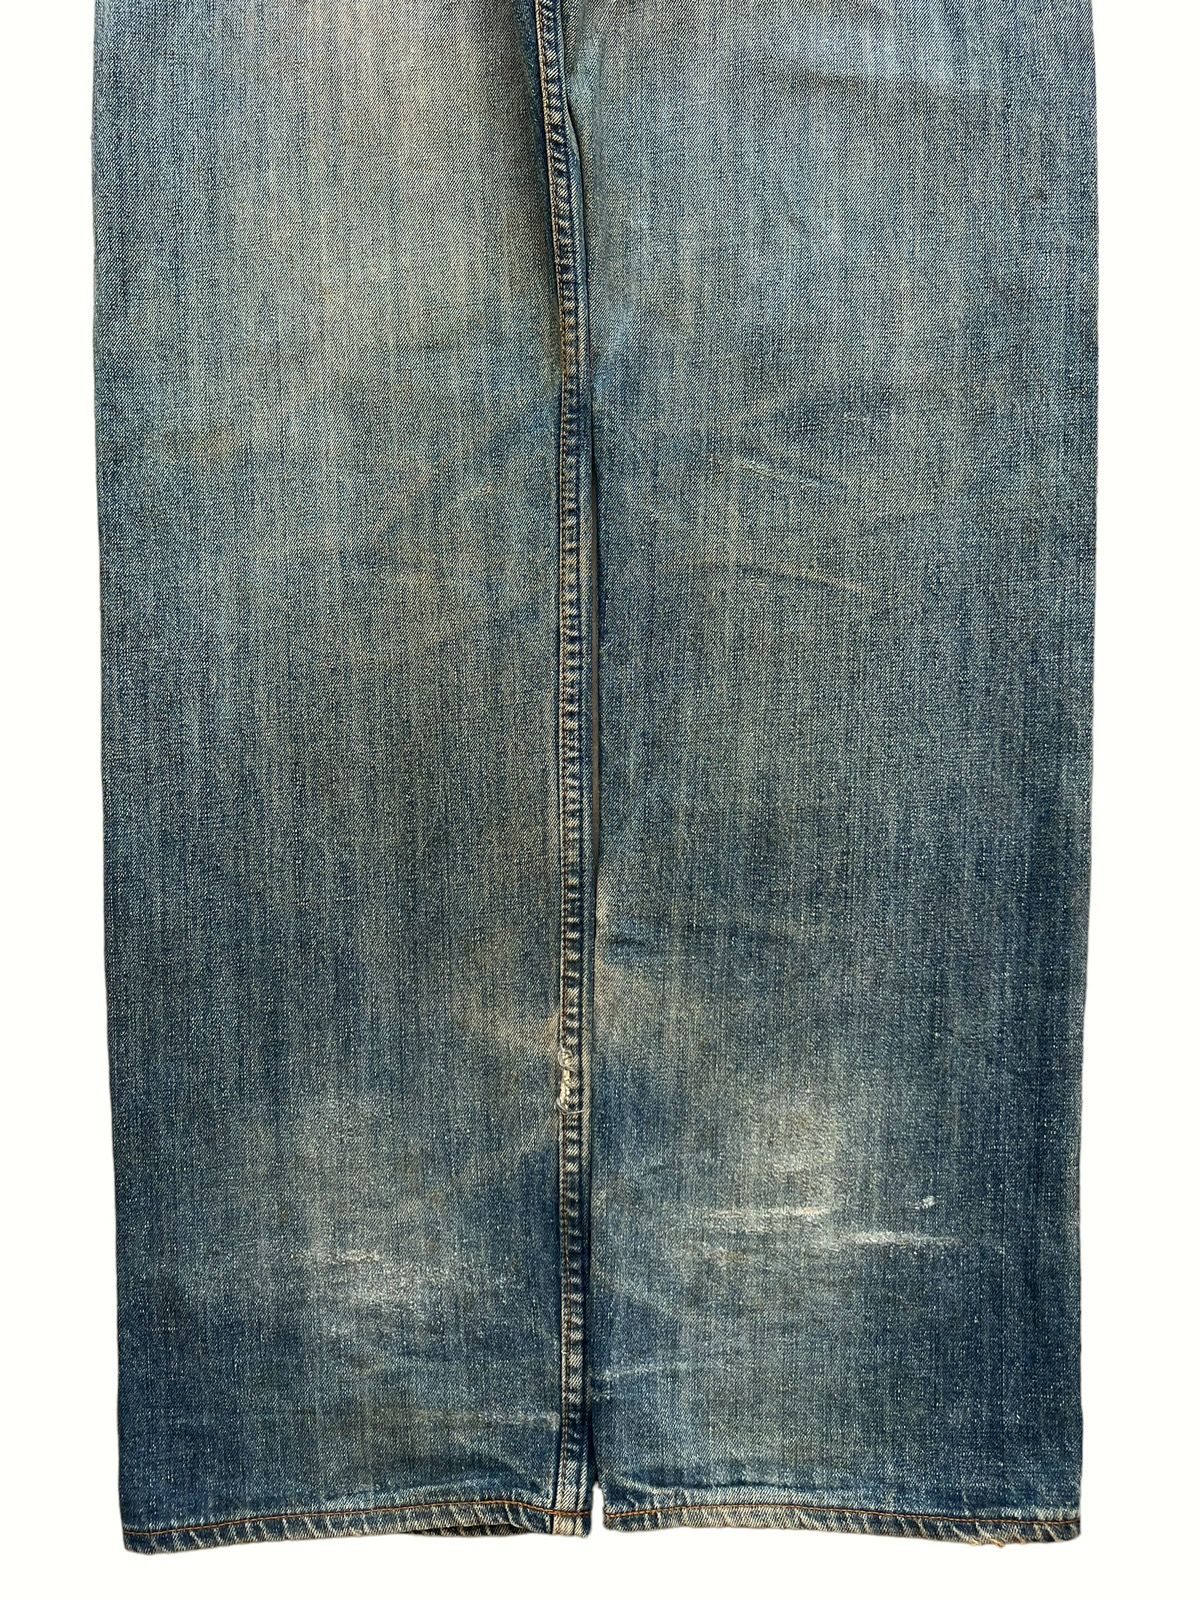 Vintage 90s Levis Distressed Mudwash Patch Denim Jeans 30x35 - 6